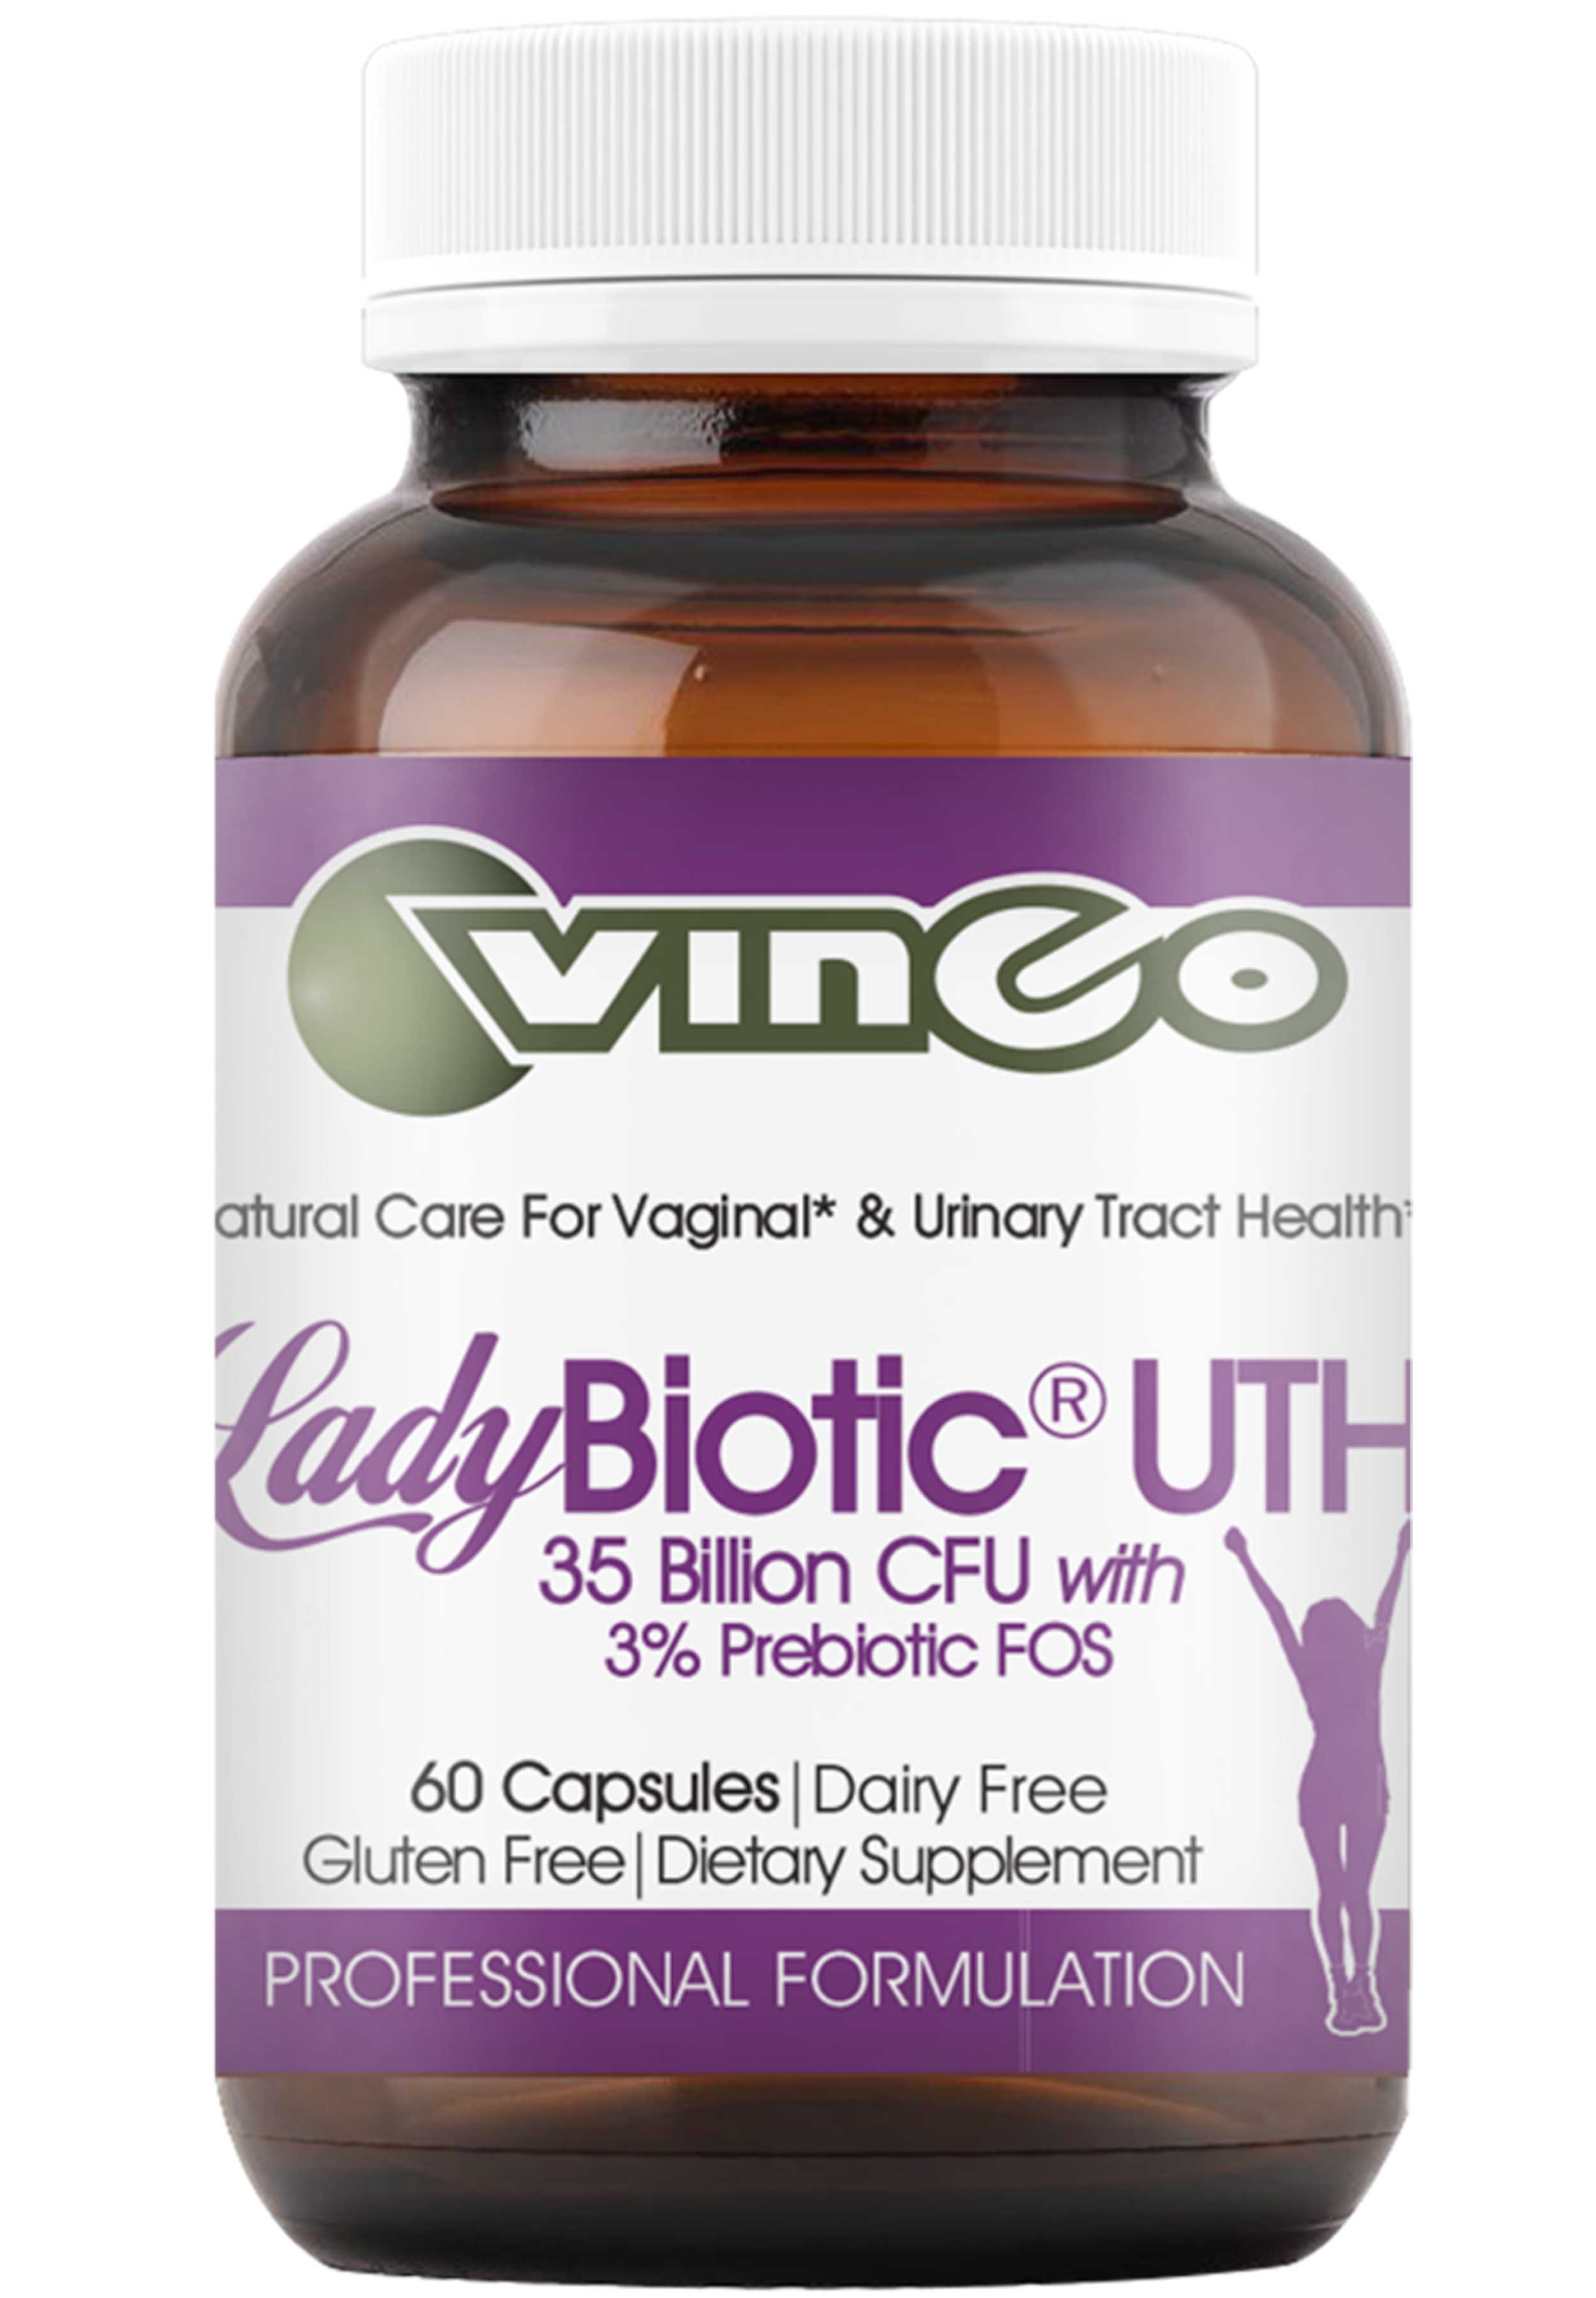 Vinco LadyBiotic® UTH